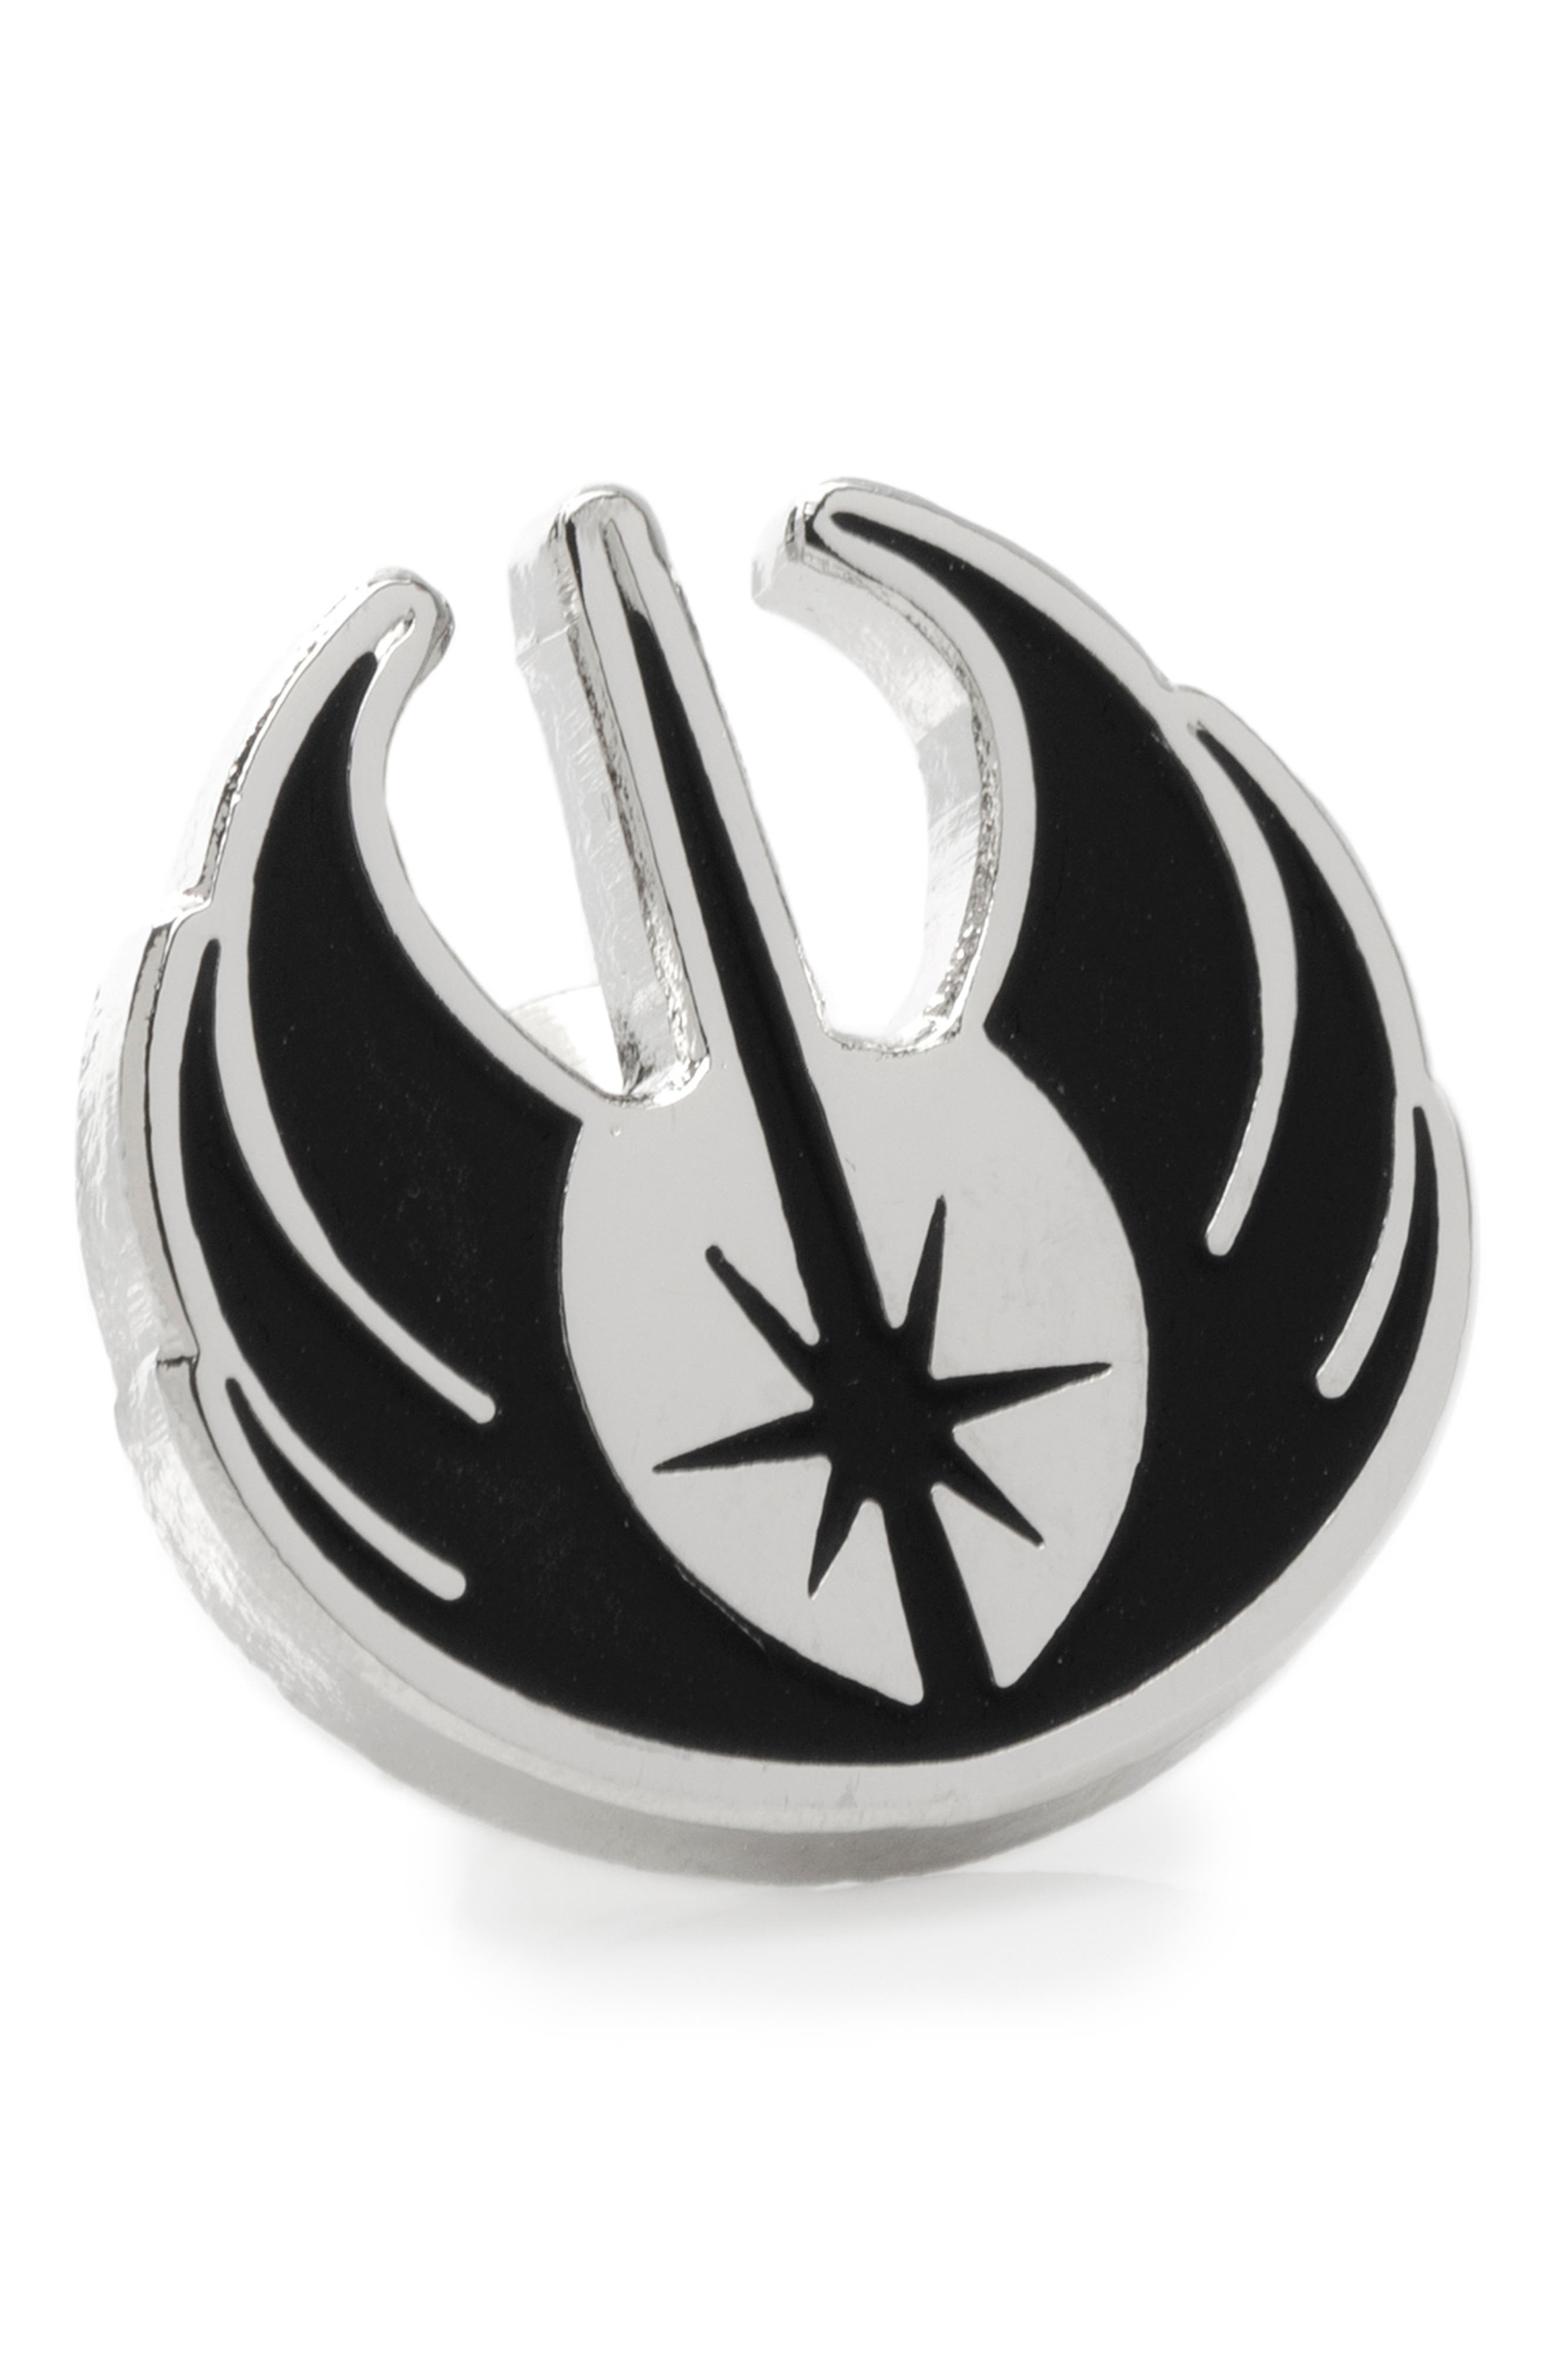 Star Wars Blue and Silver Jedi Order Emblem Quality Enamel Cufflinks 